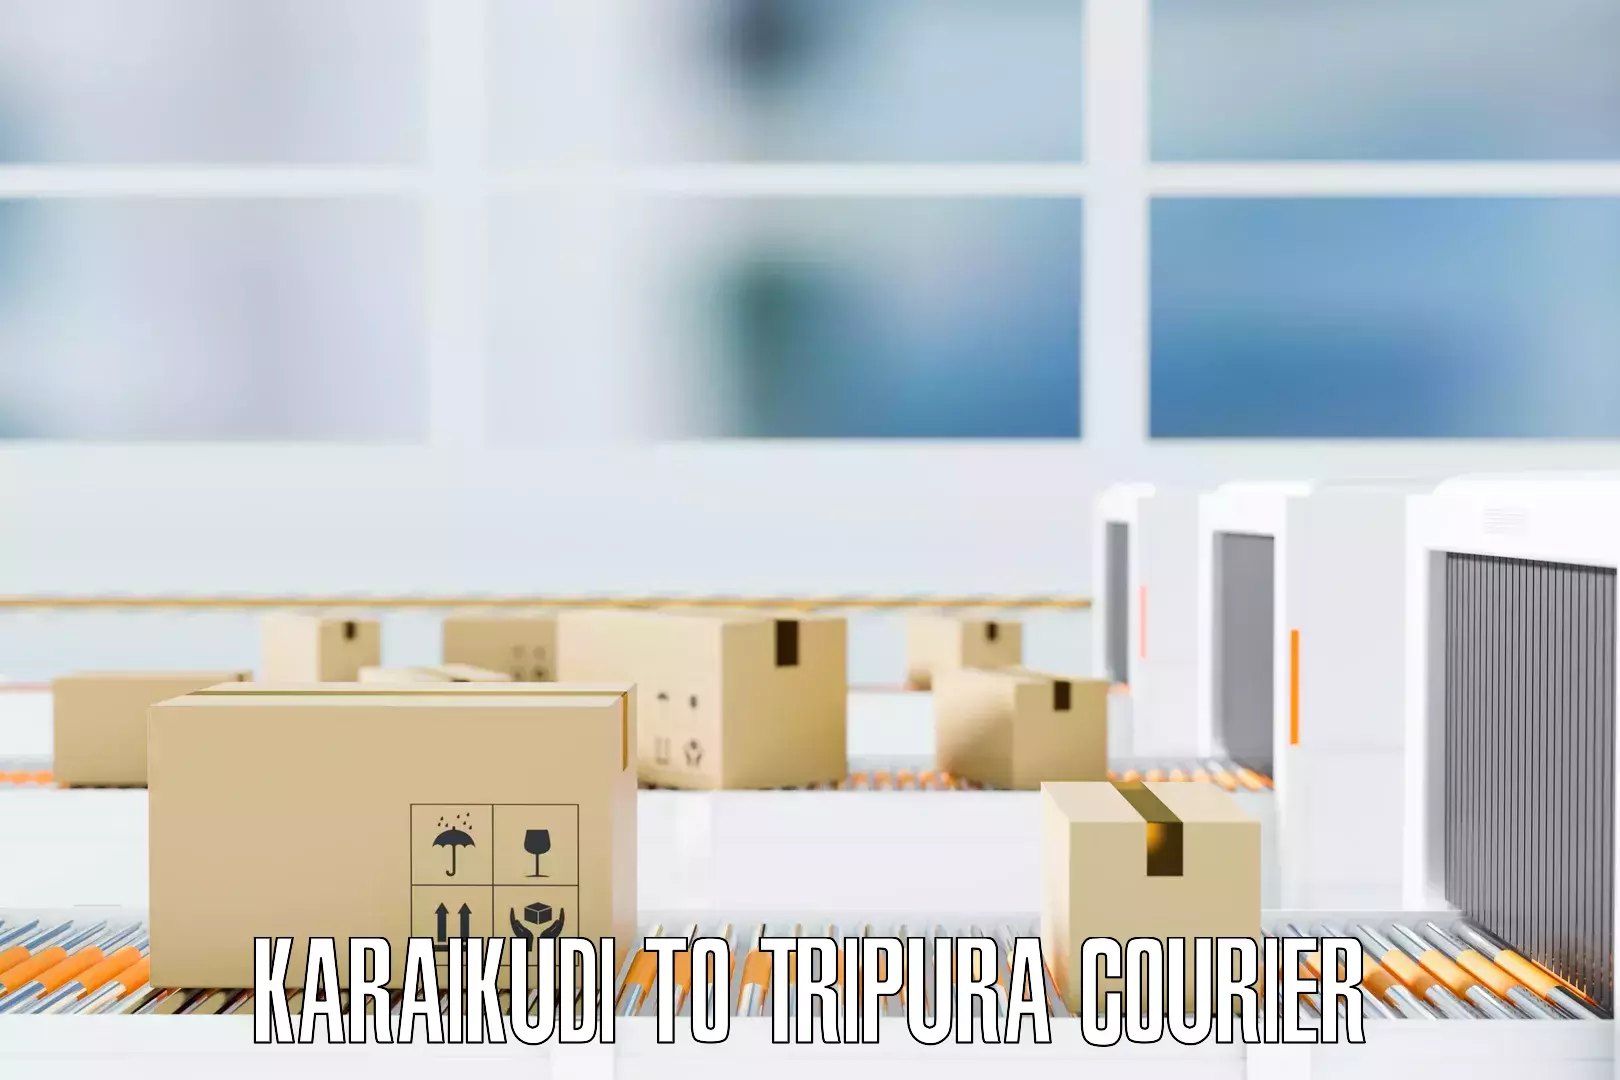 Moving and storage services Karaikudi to Tripura